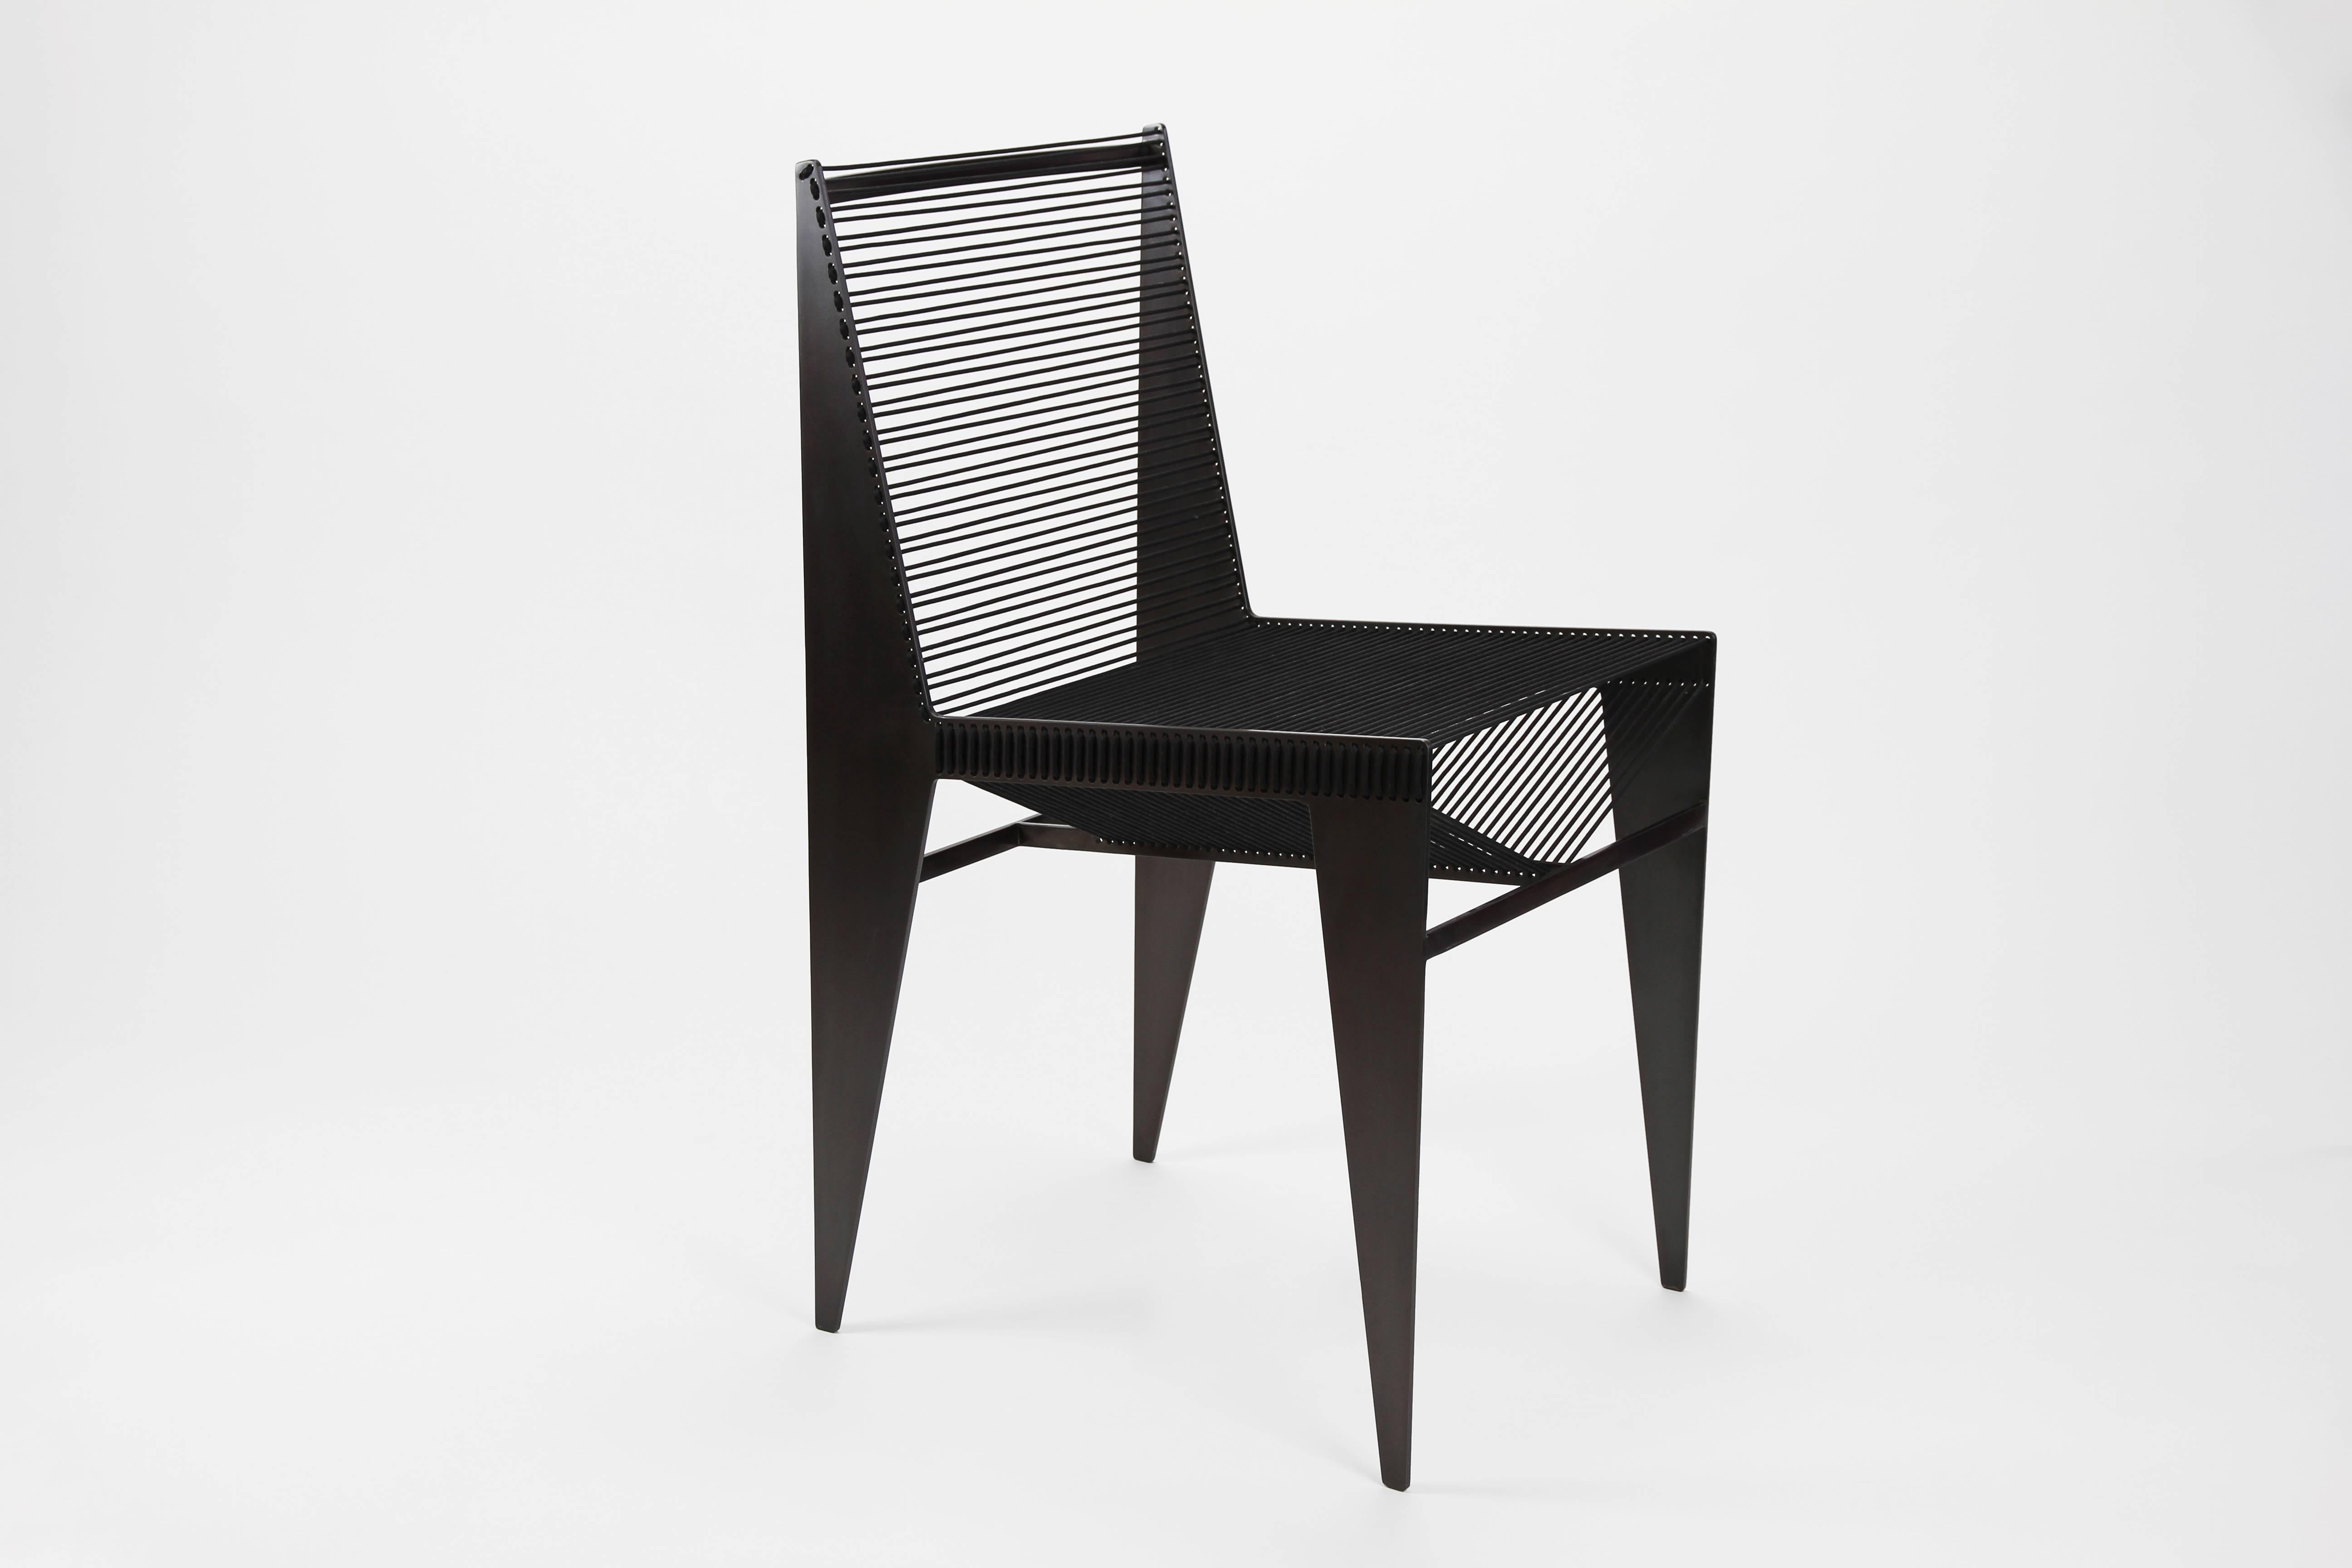 La chaise Icon ajoutera une touche architecturale à n'importe quelle pièce. Sous tous les angles, la silhouette offre un ensemble différent de lignes sculptant l'espace et la lumière.  Il a un poids agréable et convient aussi bien à une chaise